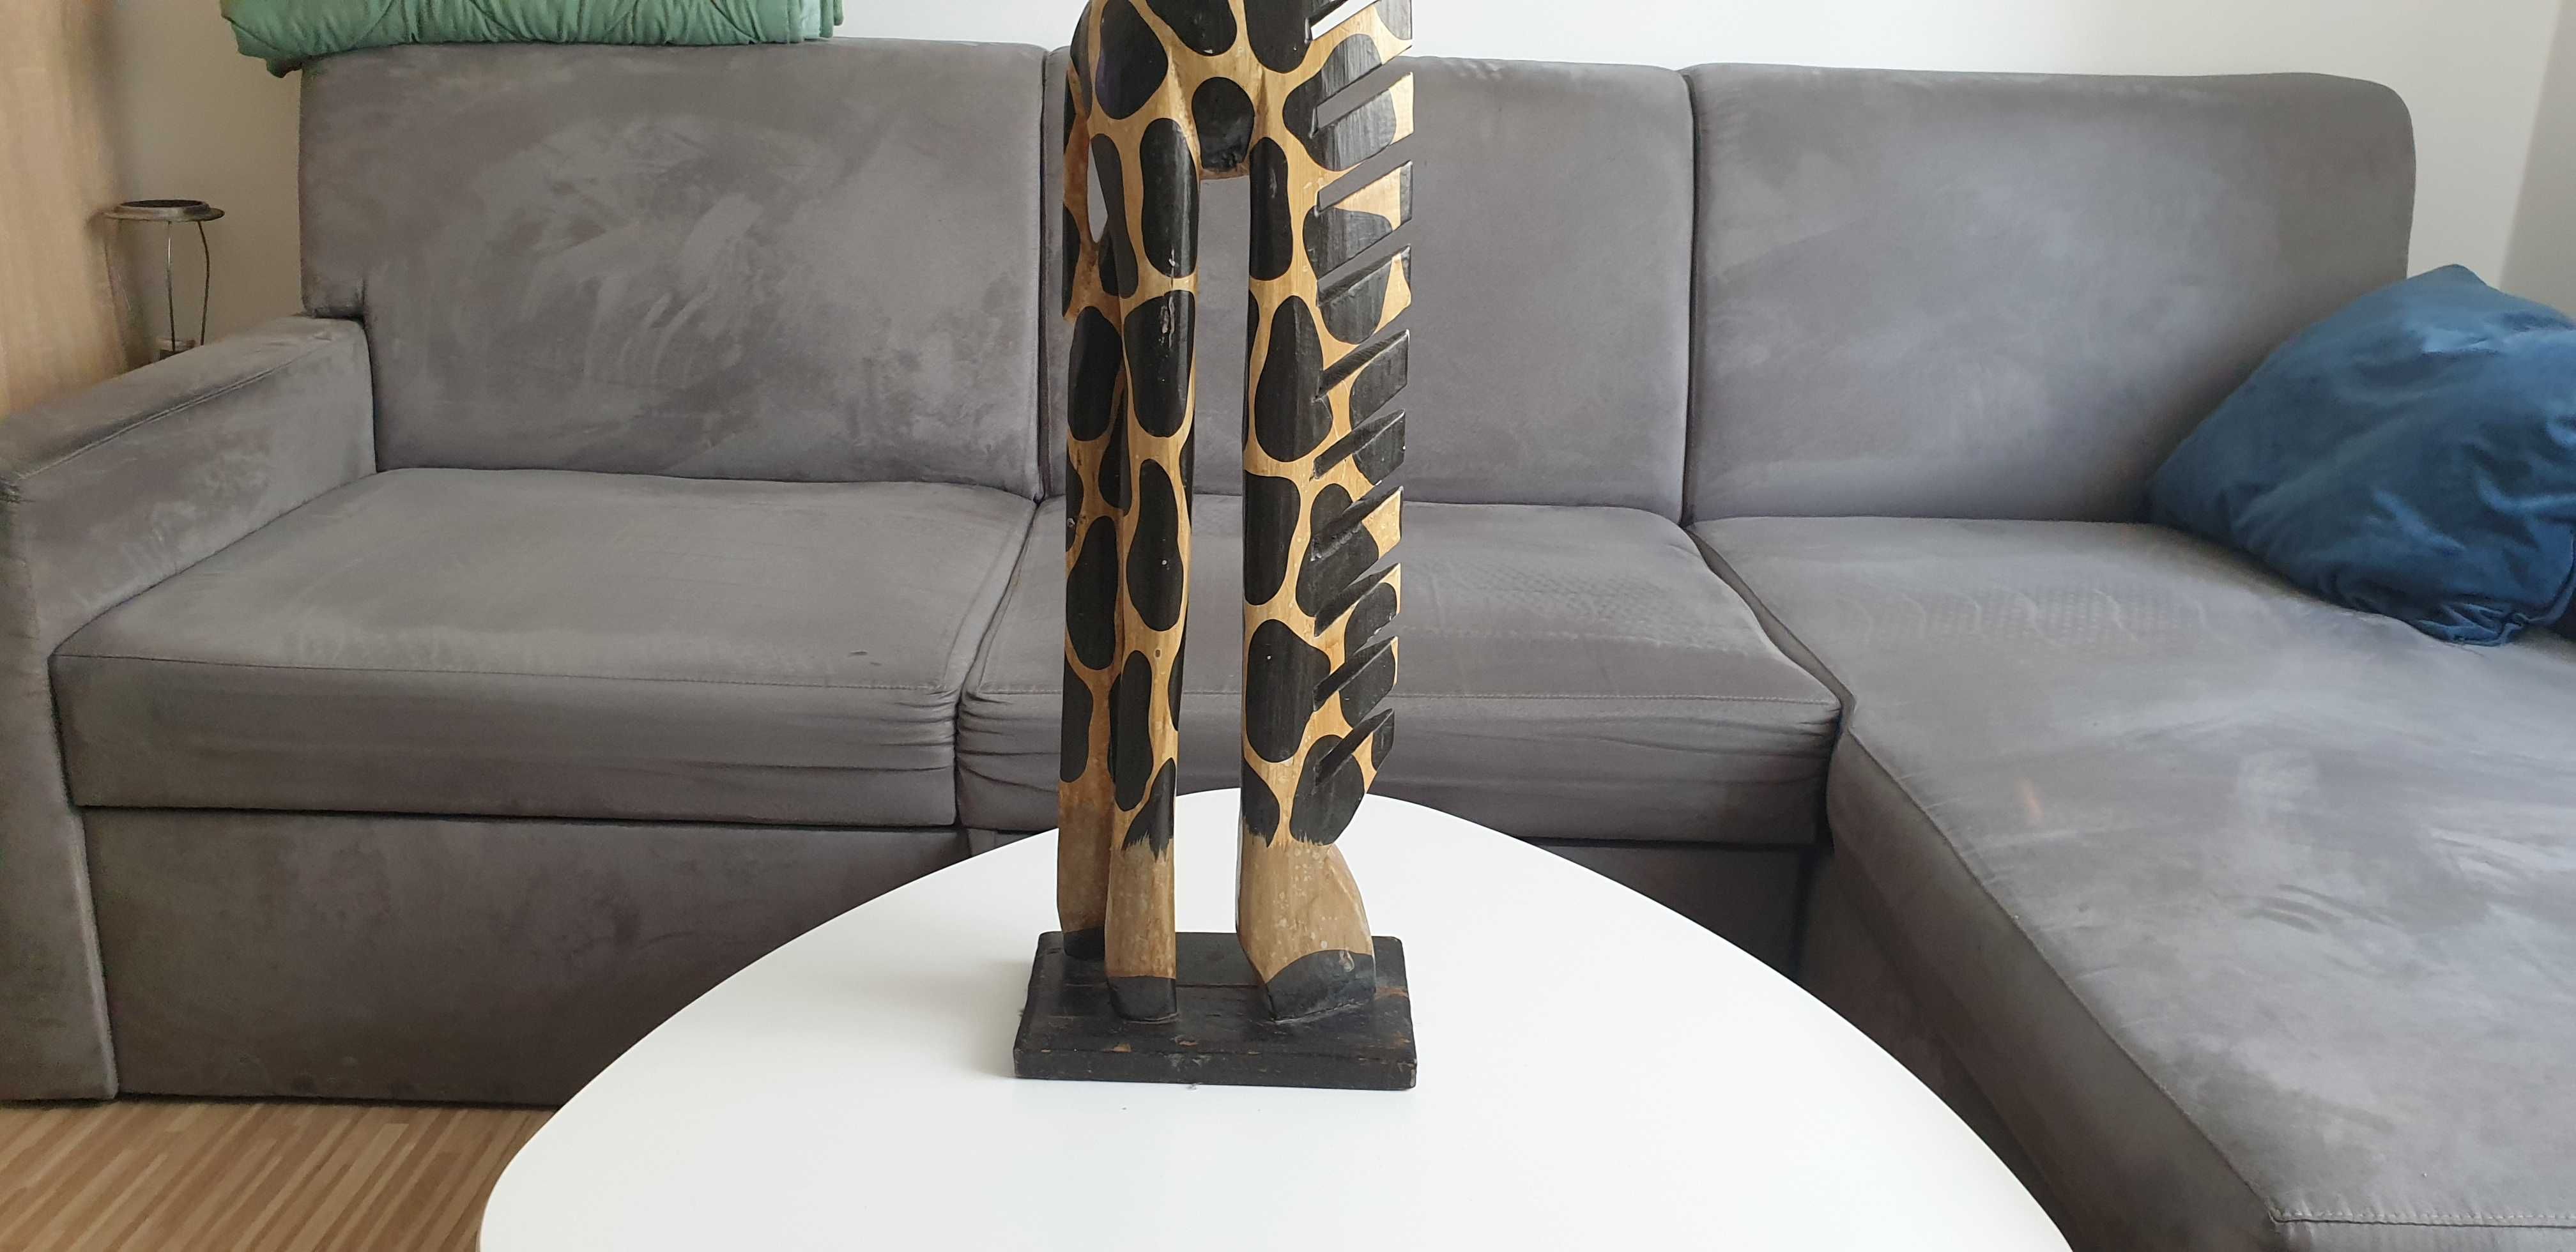 Starocie z Gdyni - Drewno - żyrafa wysokość 1m